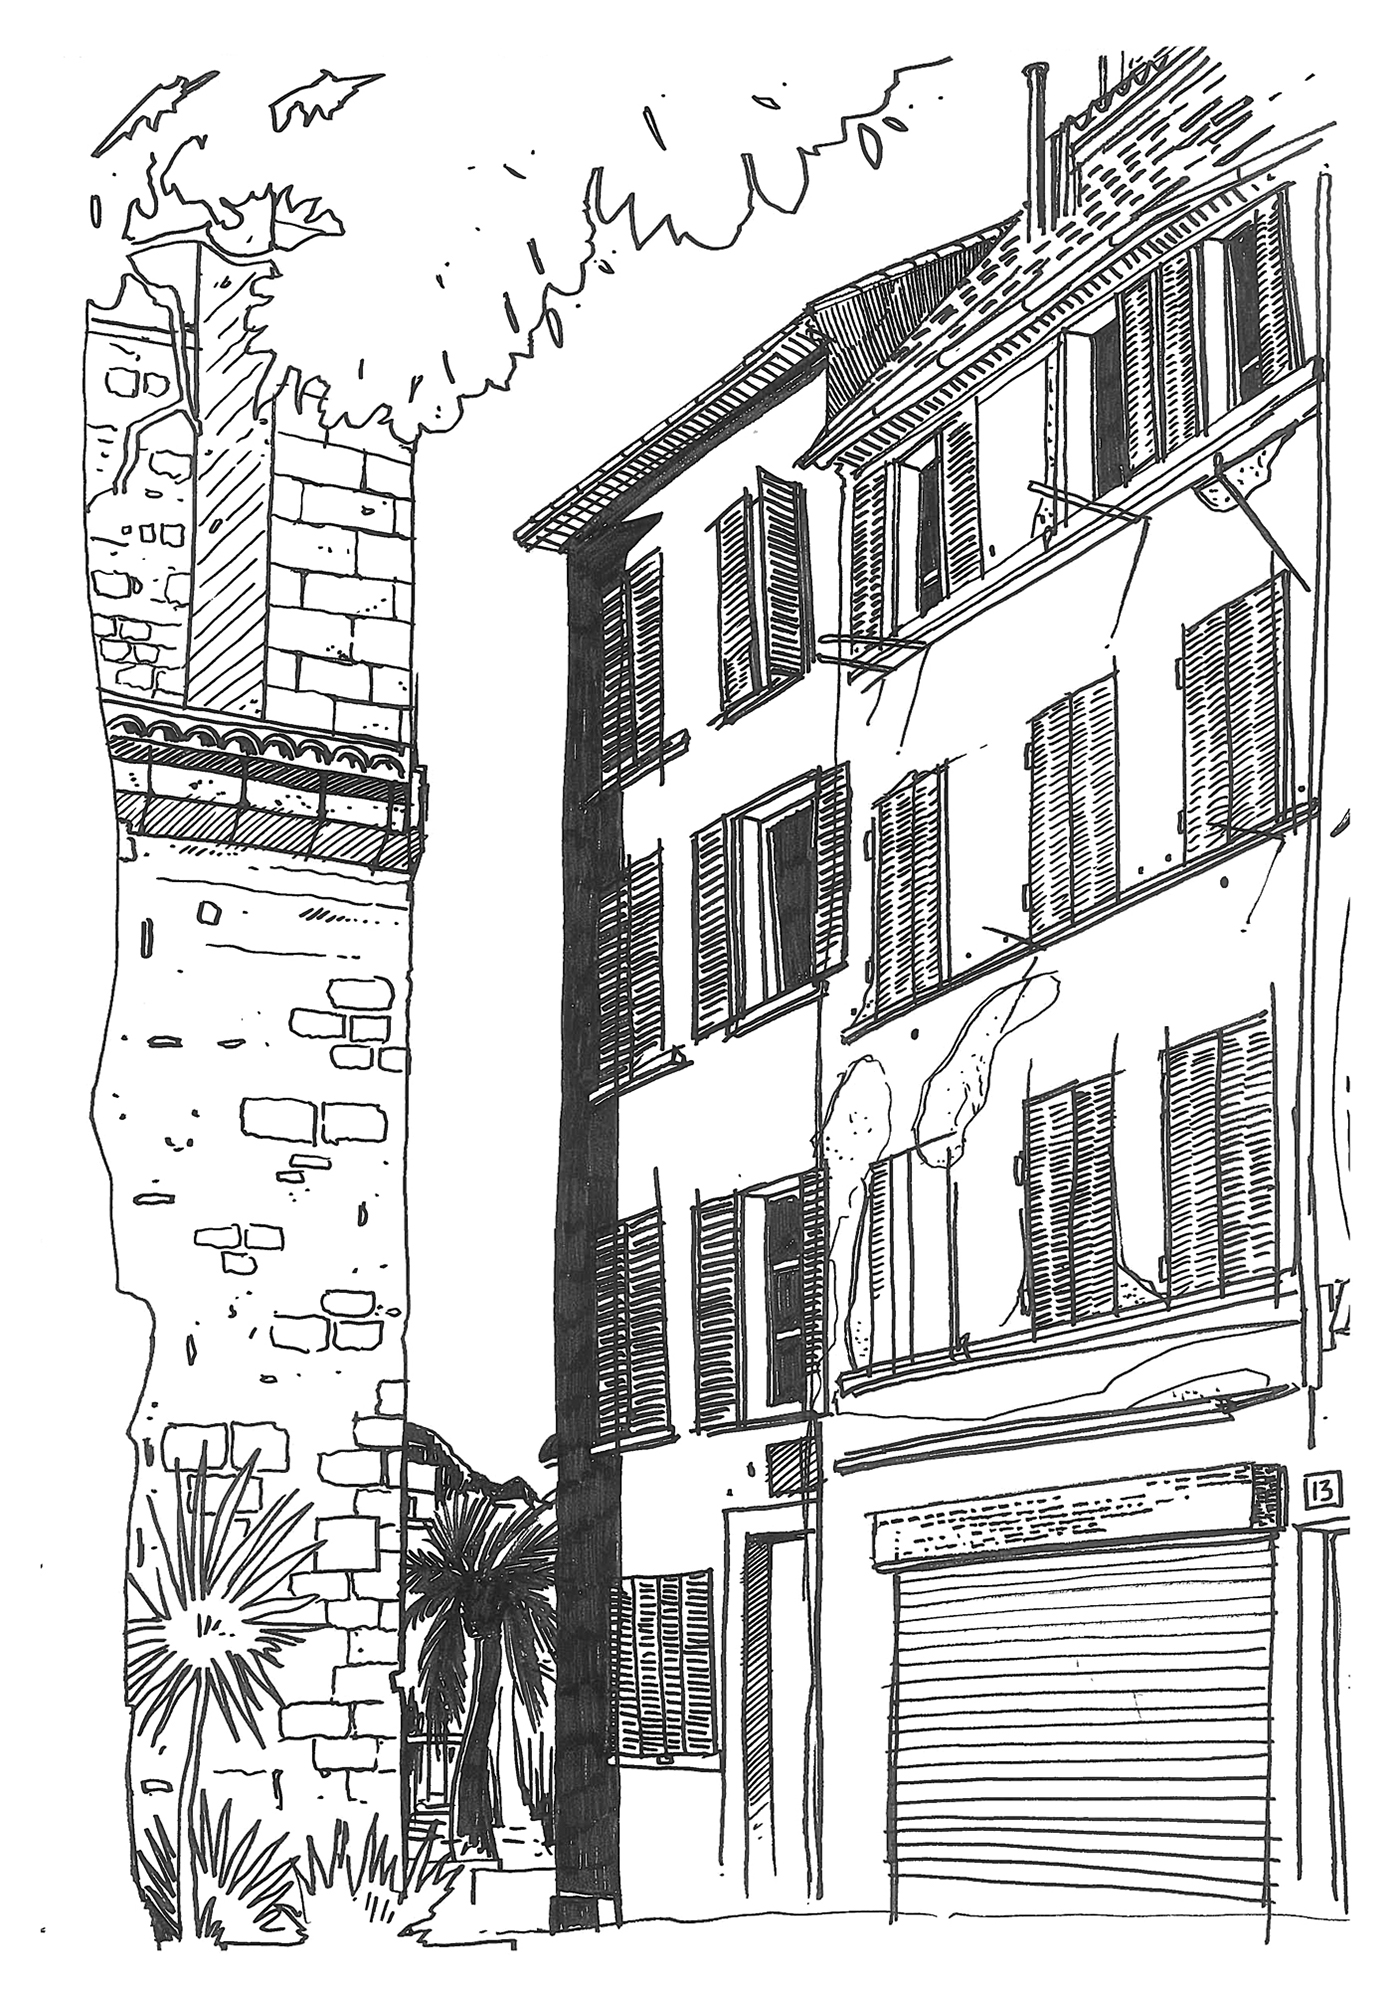 sketch urban sketchers urban sketcher usk ARCHITECTURE SKETCH la ciotat pinet Allos cloiseau